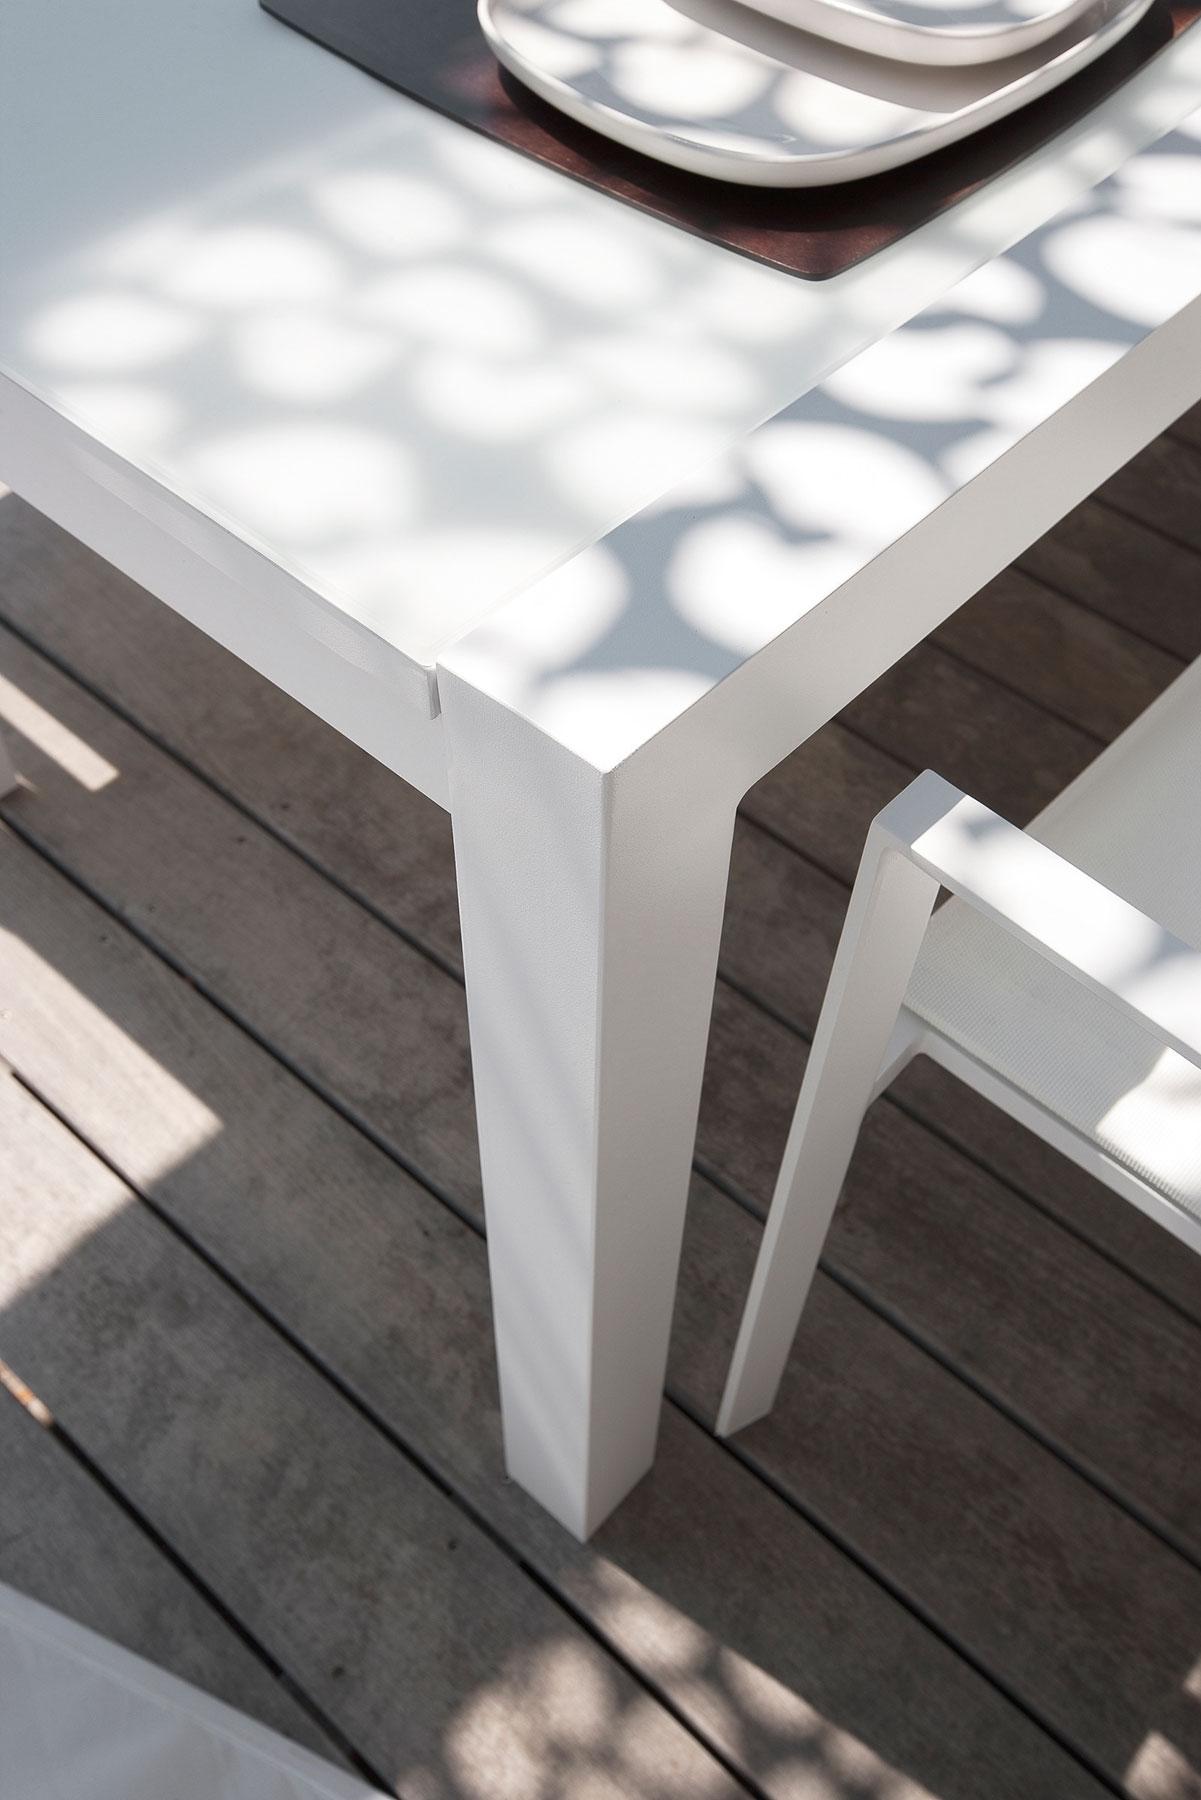 Sense Patio Extendable Table Outdoor Furniture Shop Online